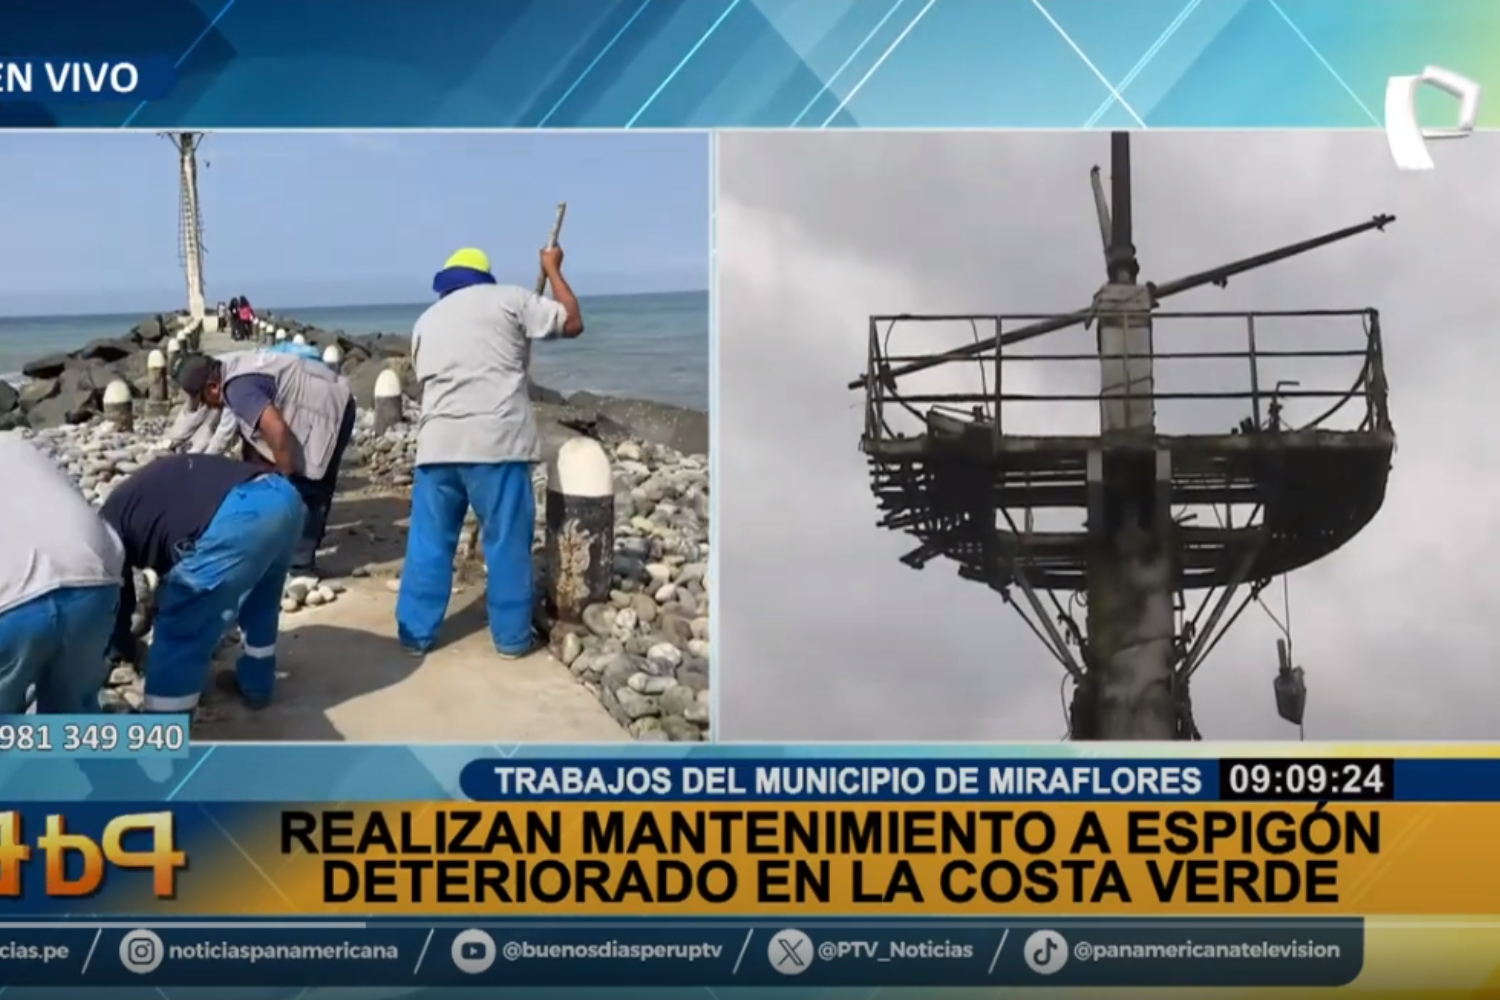 Tras denuncia de peligro por deterioro realizan mantenimiento de espigón en Costa Verde de Miraflores